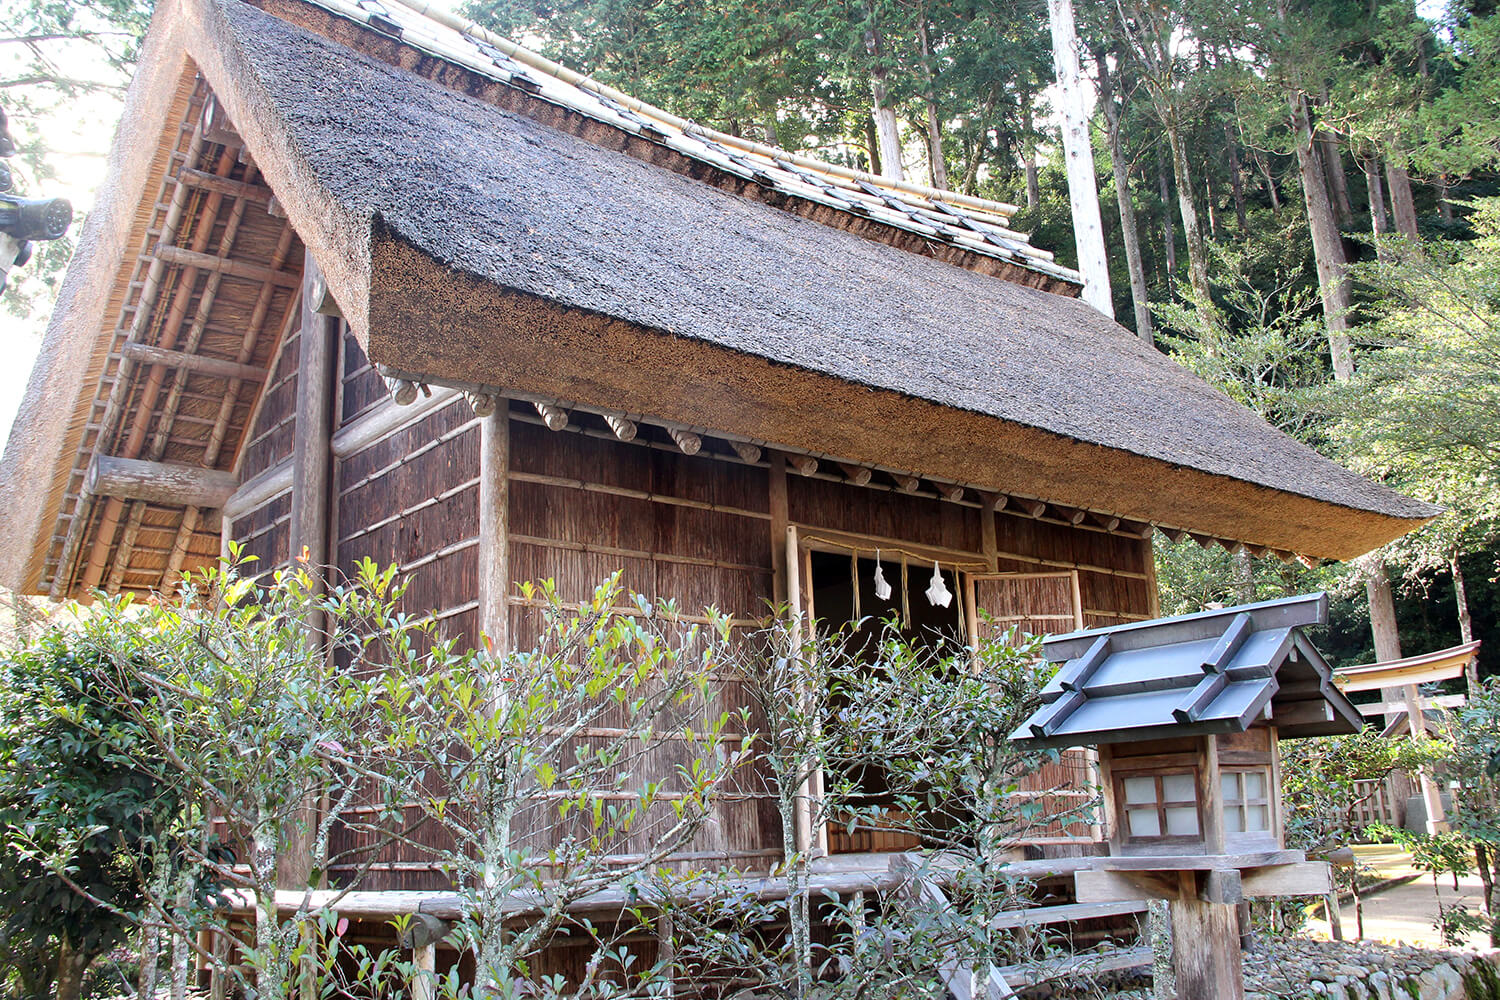 茅葺屋根の「鑽火殿」。壁は檜の皮で作られている貴重な建造物